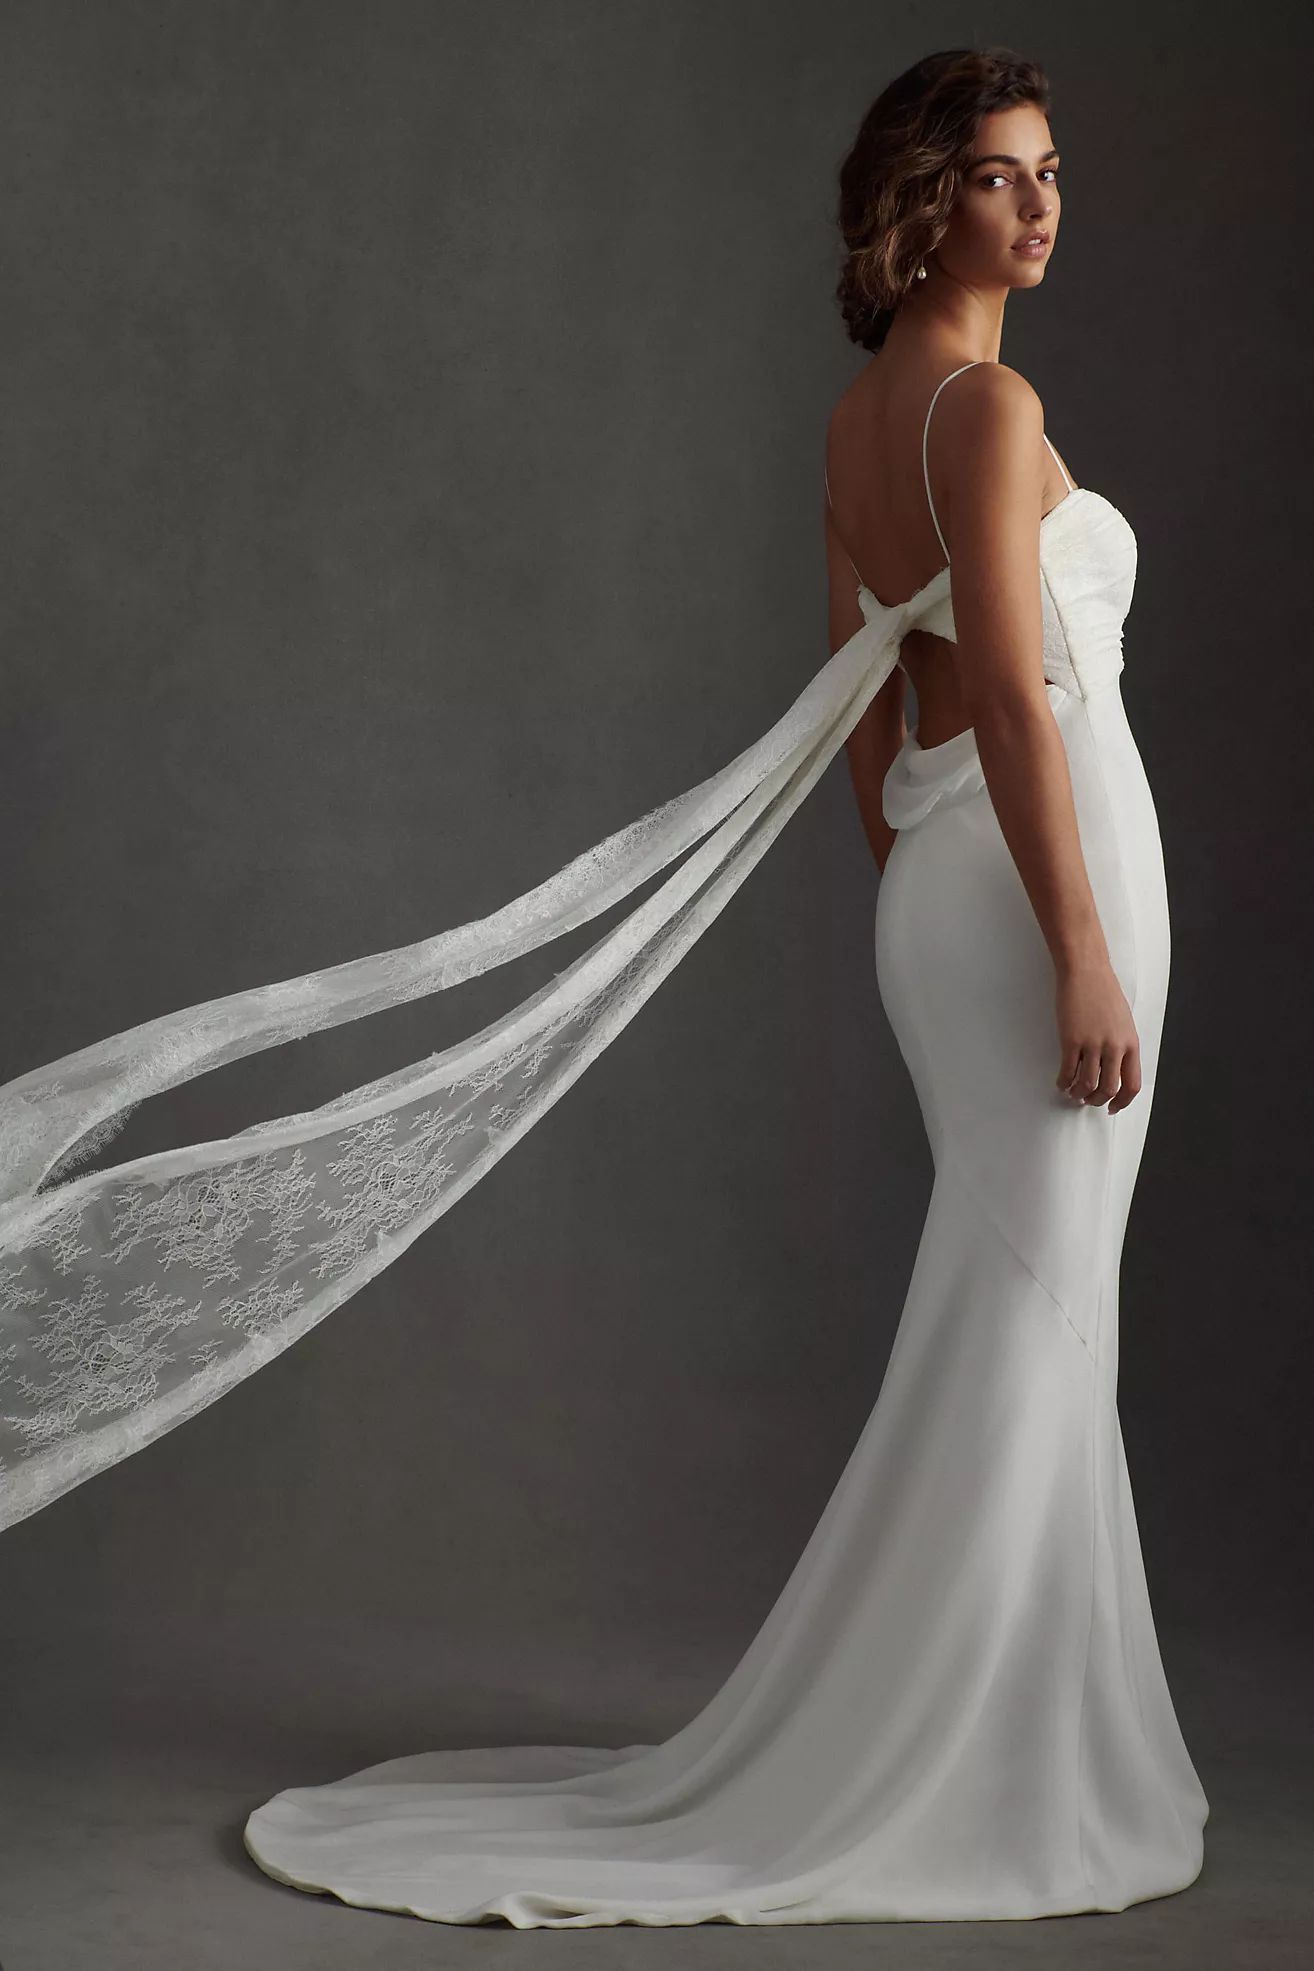 Savannah Miller Emmy Sweetheart Mermaid Wedding Gown | Anthropologie (US)